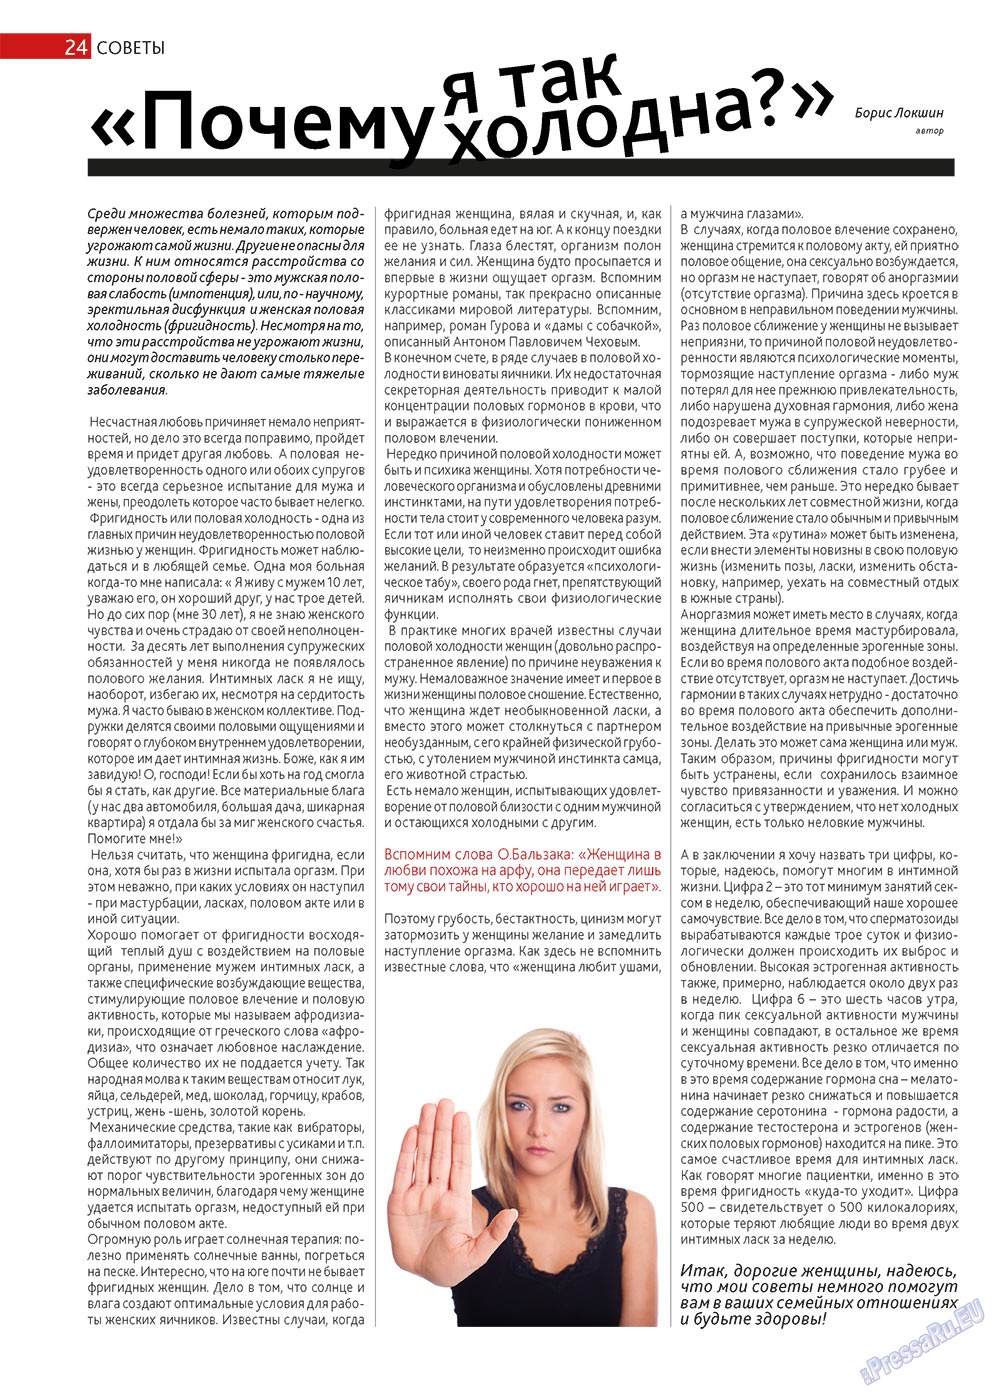 Афиша Augsburg (журнал). 2013 год, номер 3, стр. 24